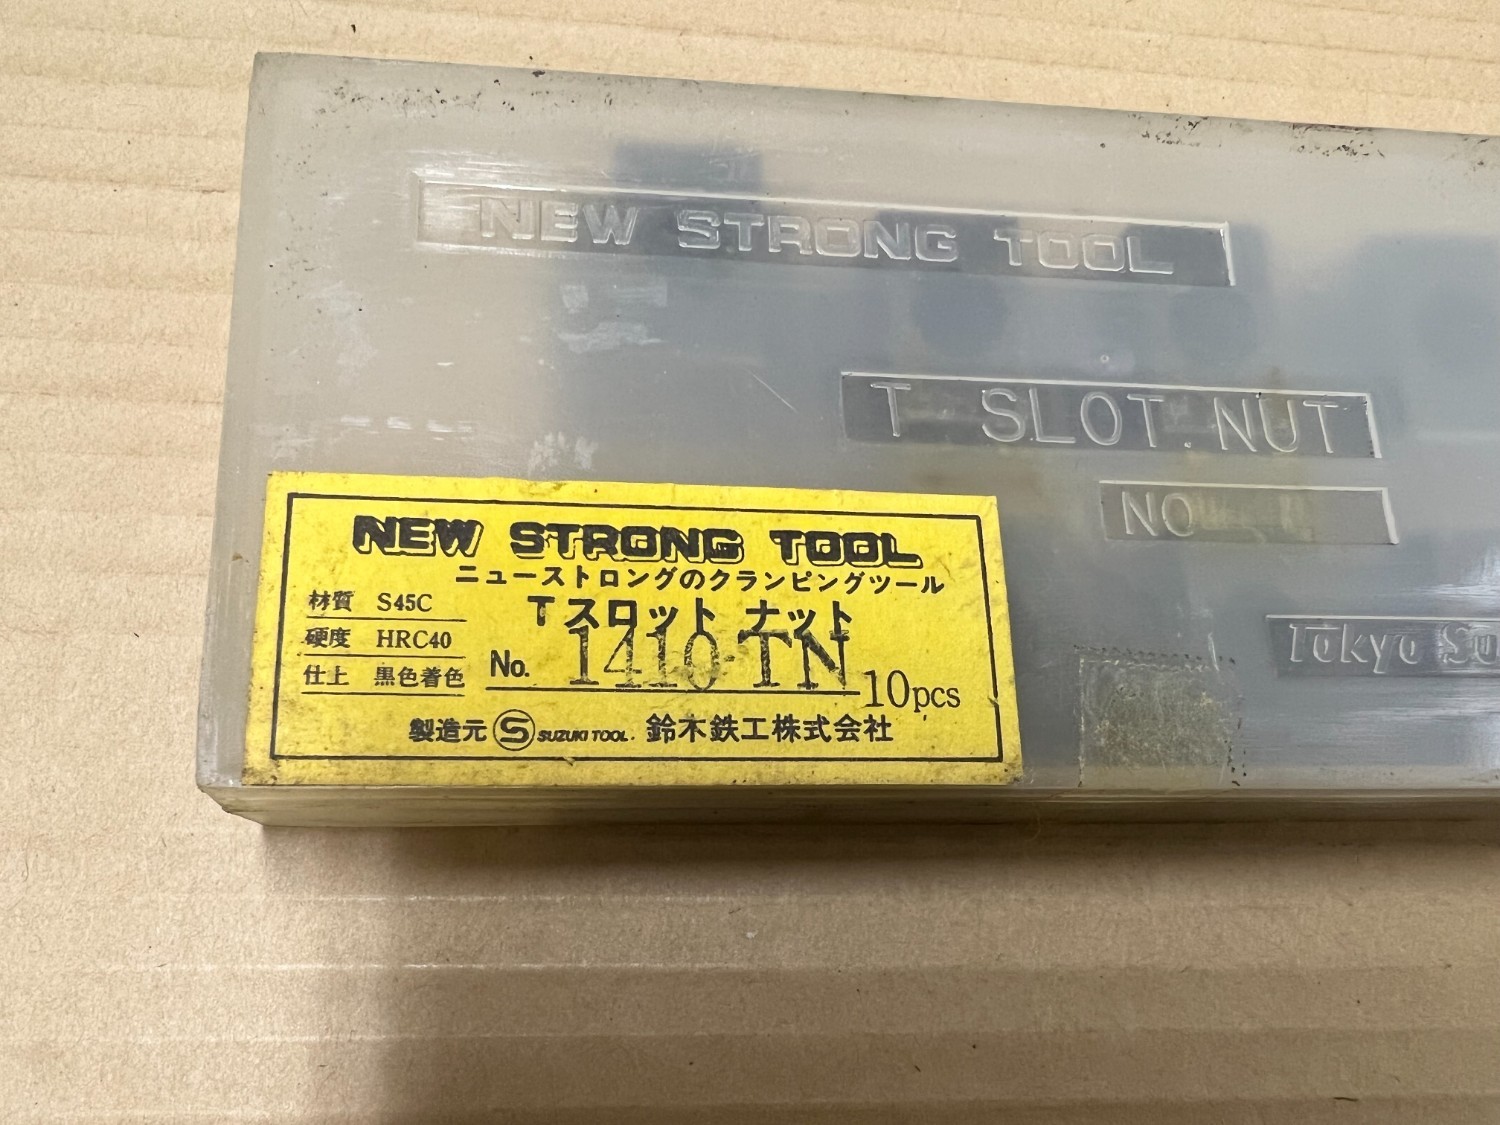 中古Other 【Tスロットナット】1410TN(20個） ニューストロングツール/NEW STRONG TOOL